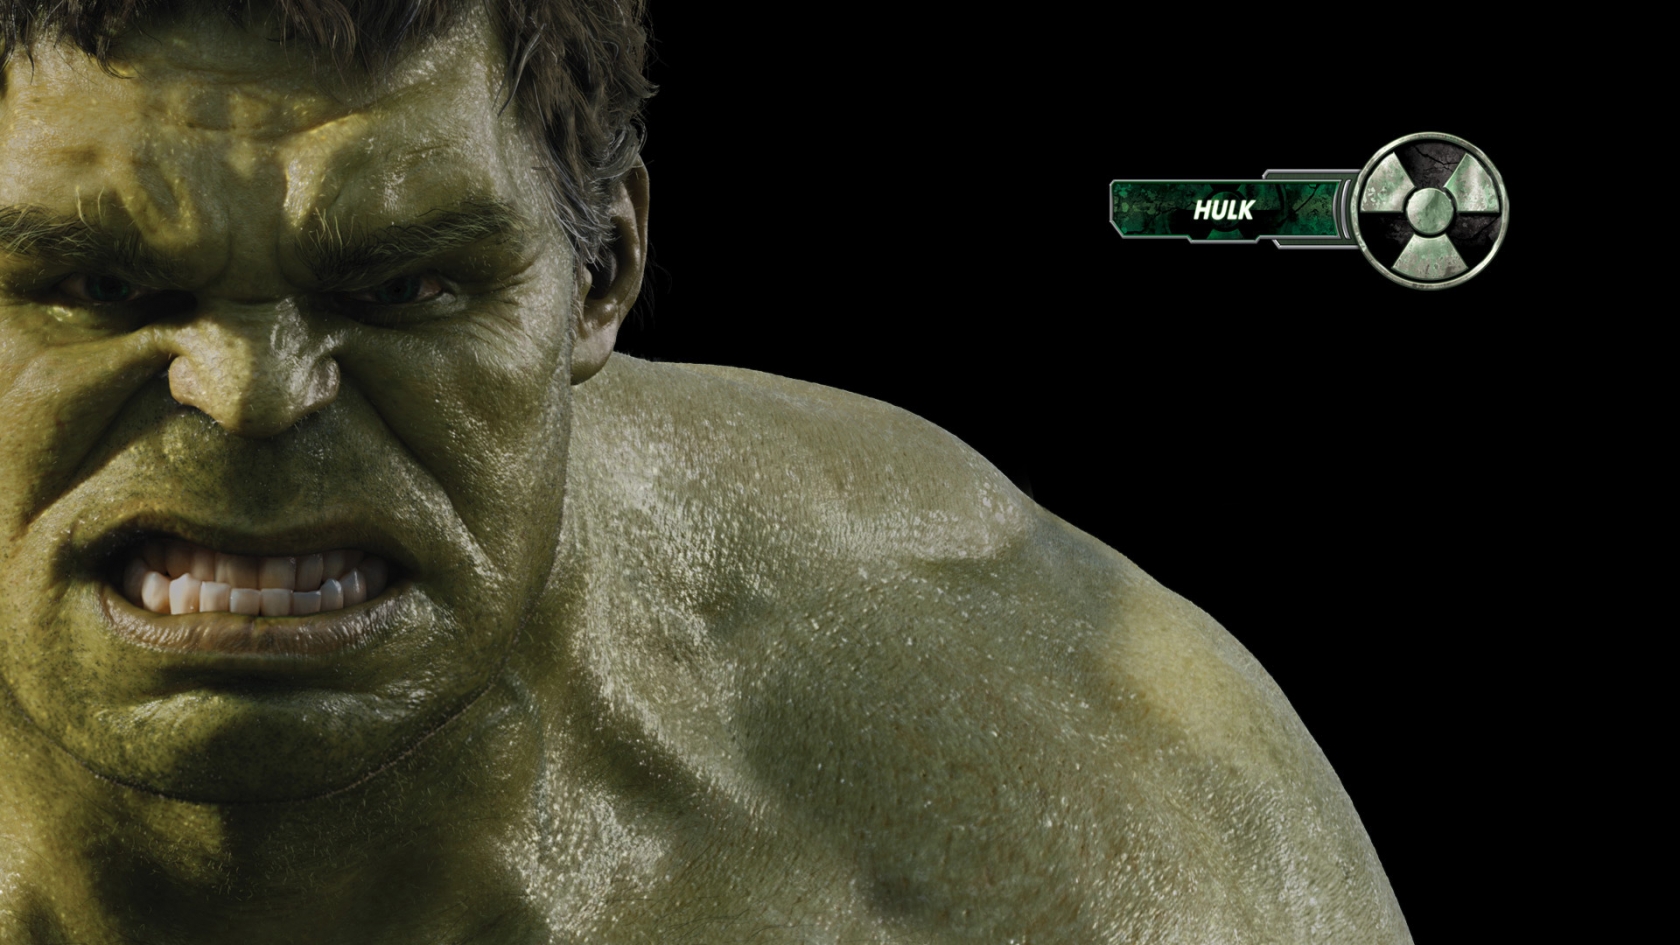 The Avengers Hulk for 1680 x 945 HDTV resolution